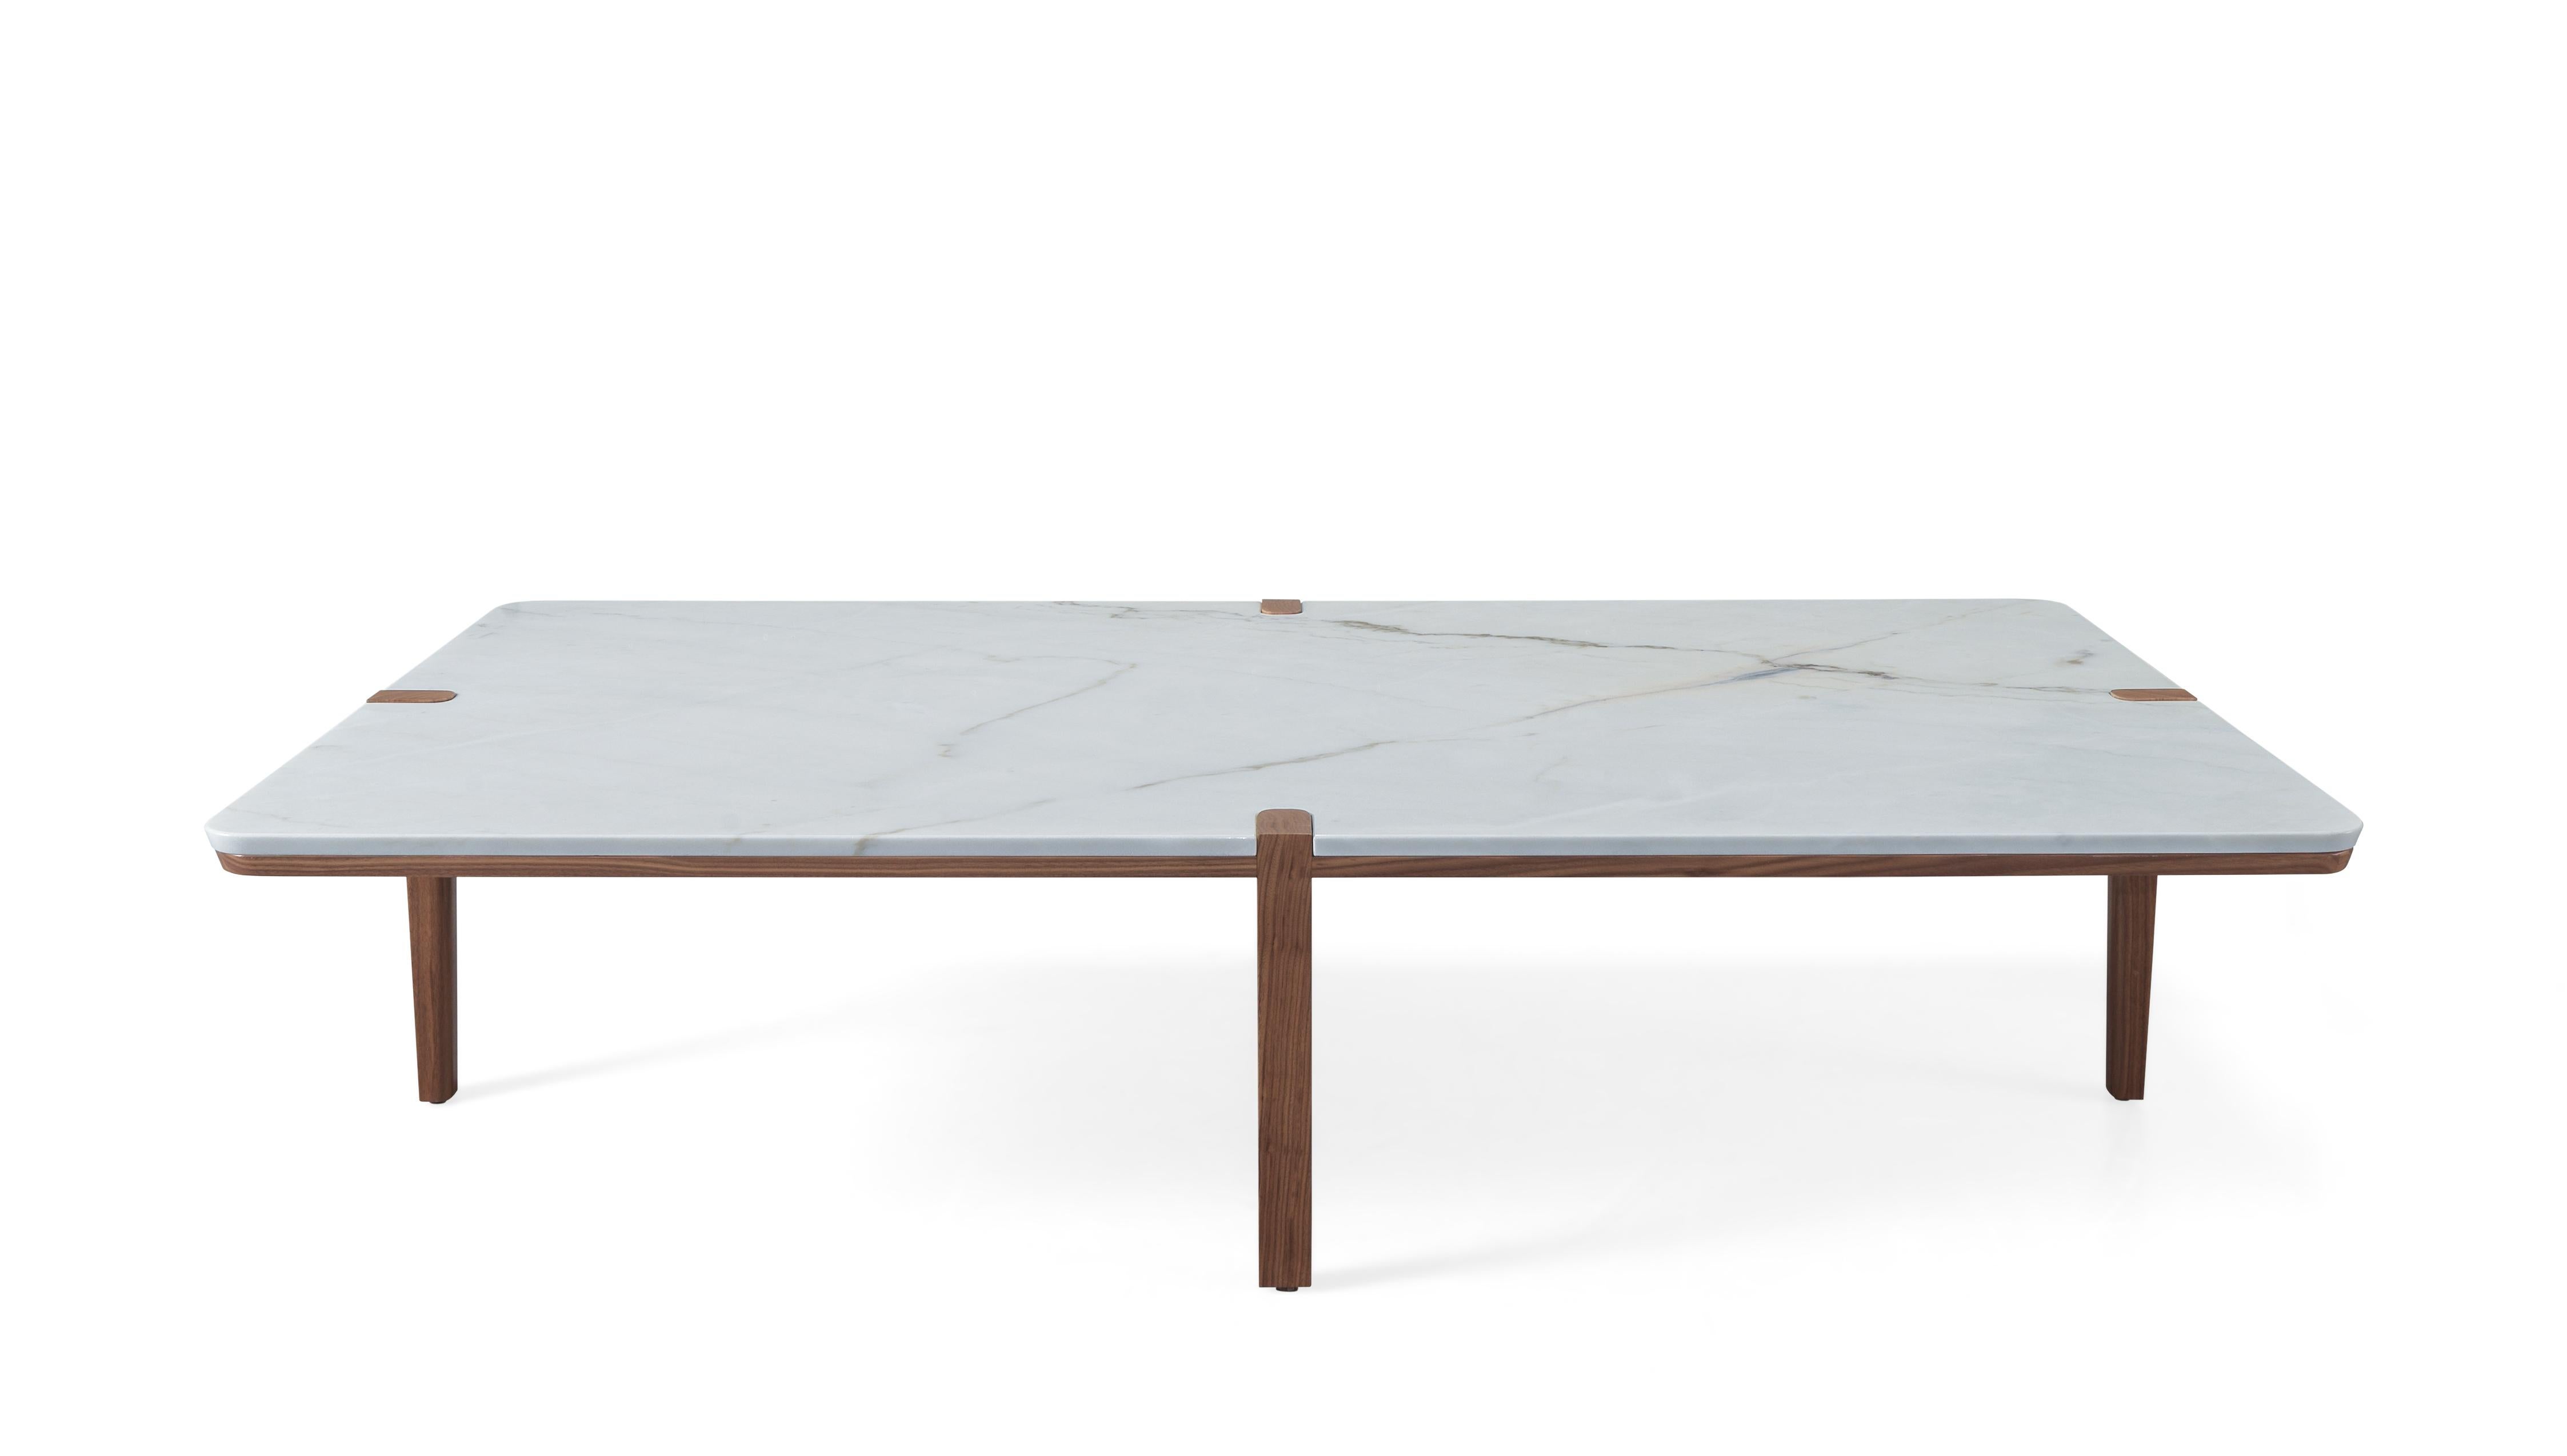 Cette belle table d'angle a été conçue pour perturber la position classique des pieds de la plupart des tables, en les plaçant dans une position particulière qui assure la stabilité et laisse les coins libres.
Les versions rectangulaires peuvent